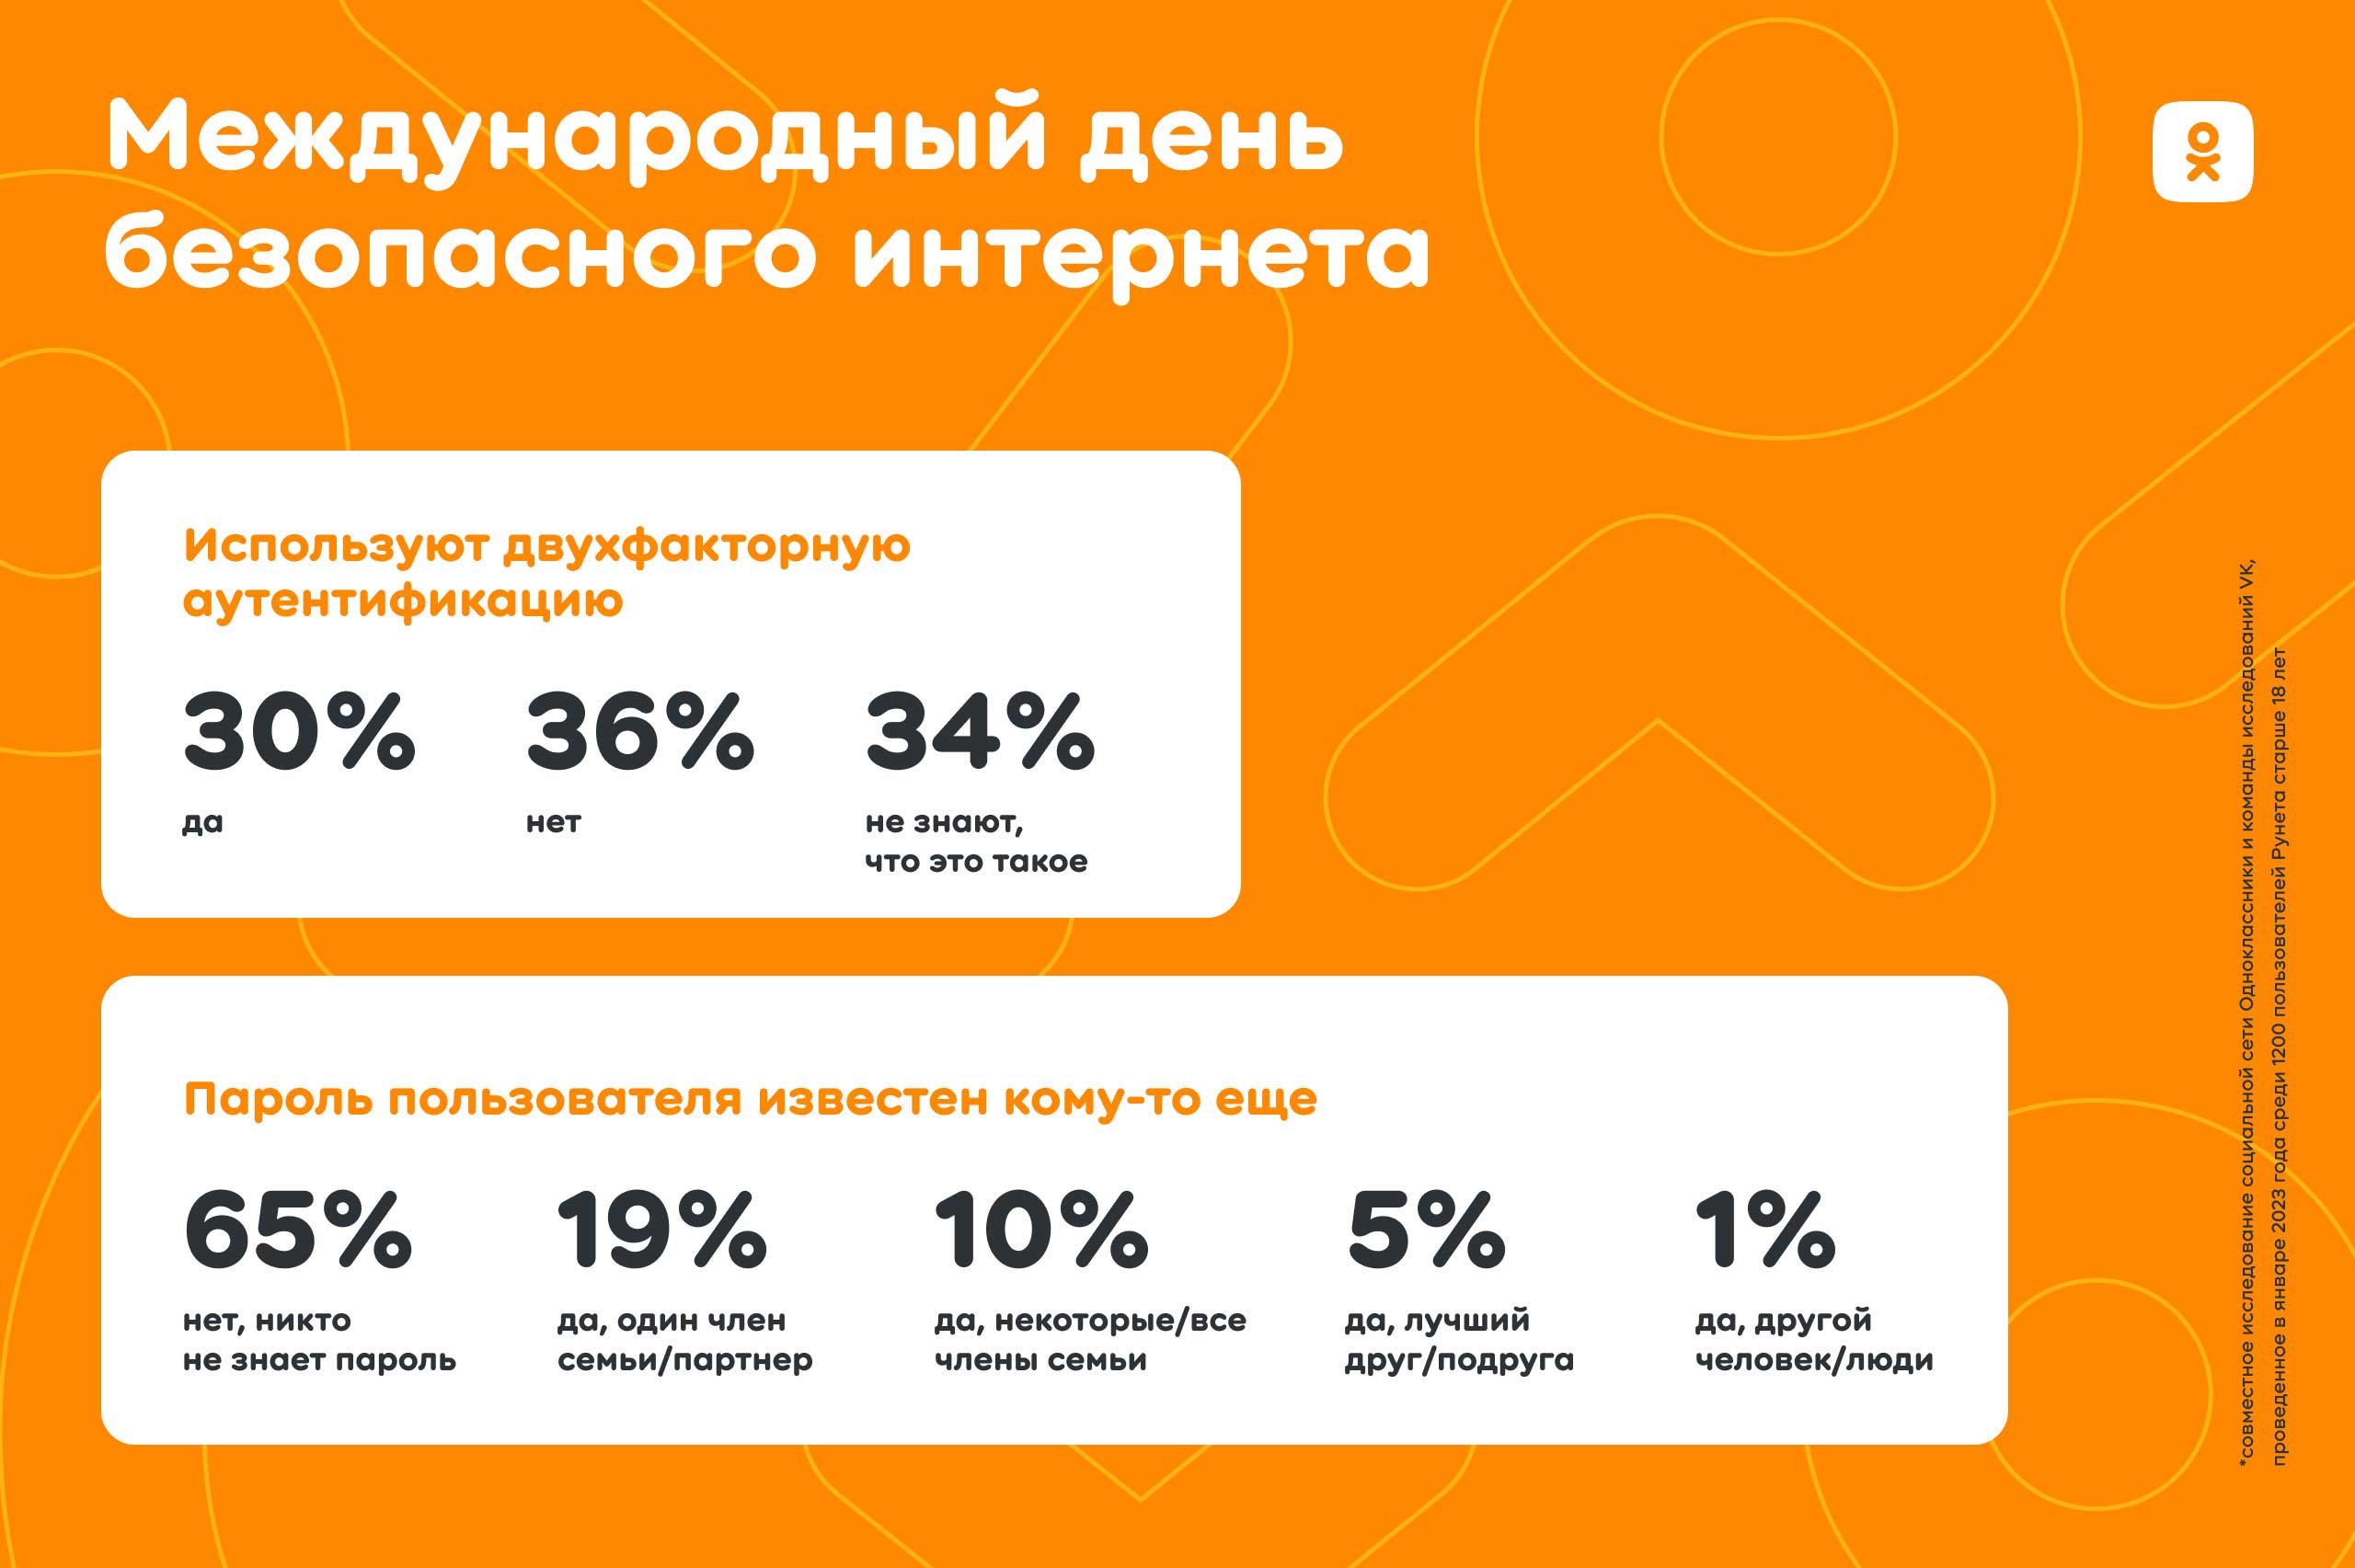 Исследование ОК: 65% пользователей Рунета не делятся своими данными для авторизации | Анализ рынков